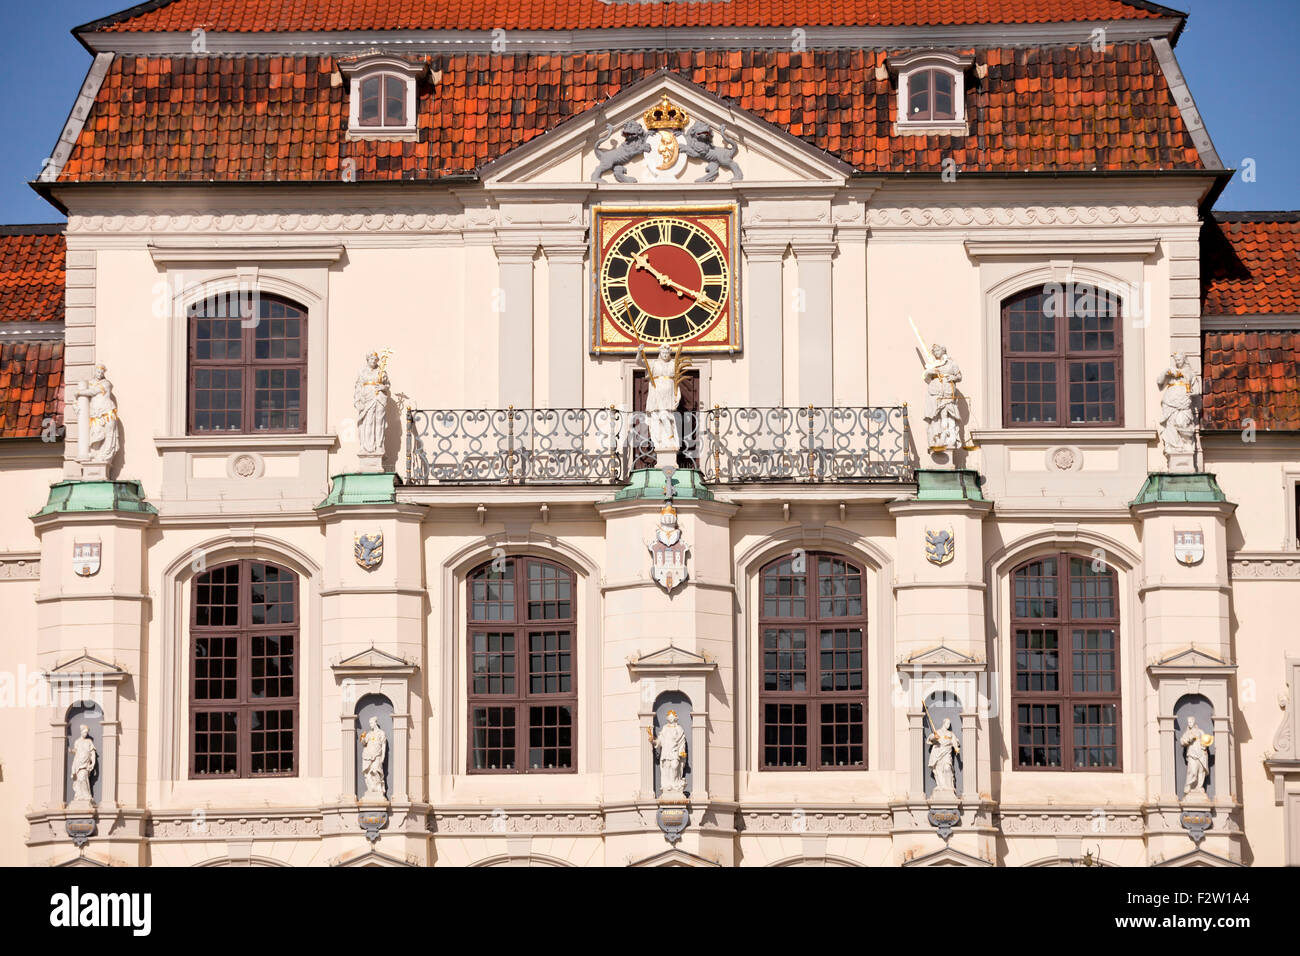 Hôtel de ville historique, ville hanséatique de Lunebourg, Basse-Saxe, Allemagne Banque D'Images